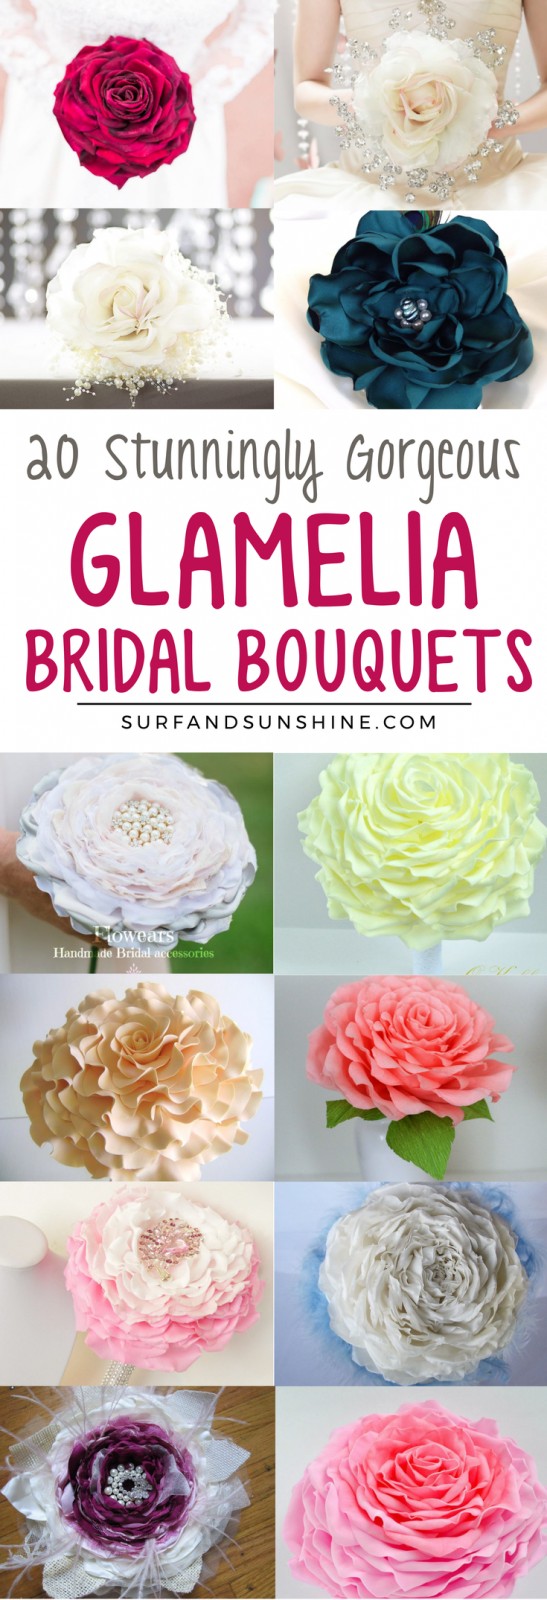 glamelia bridal bouquets